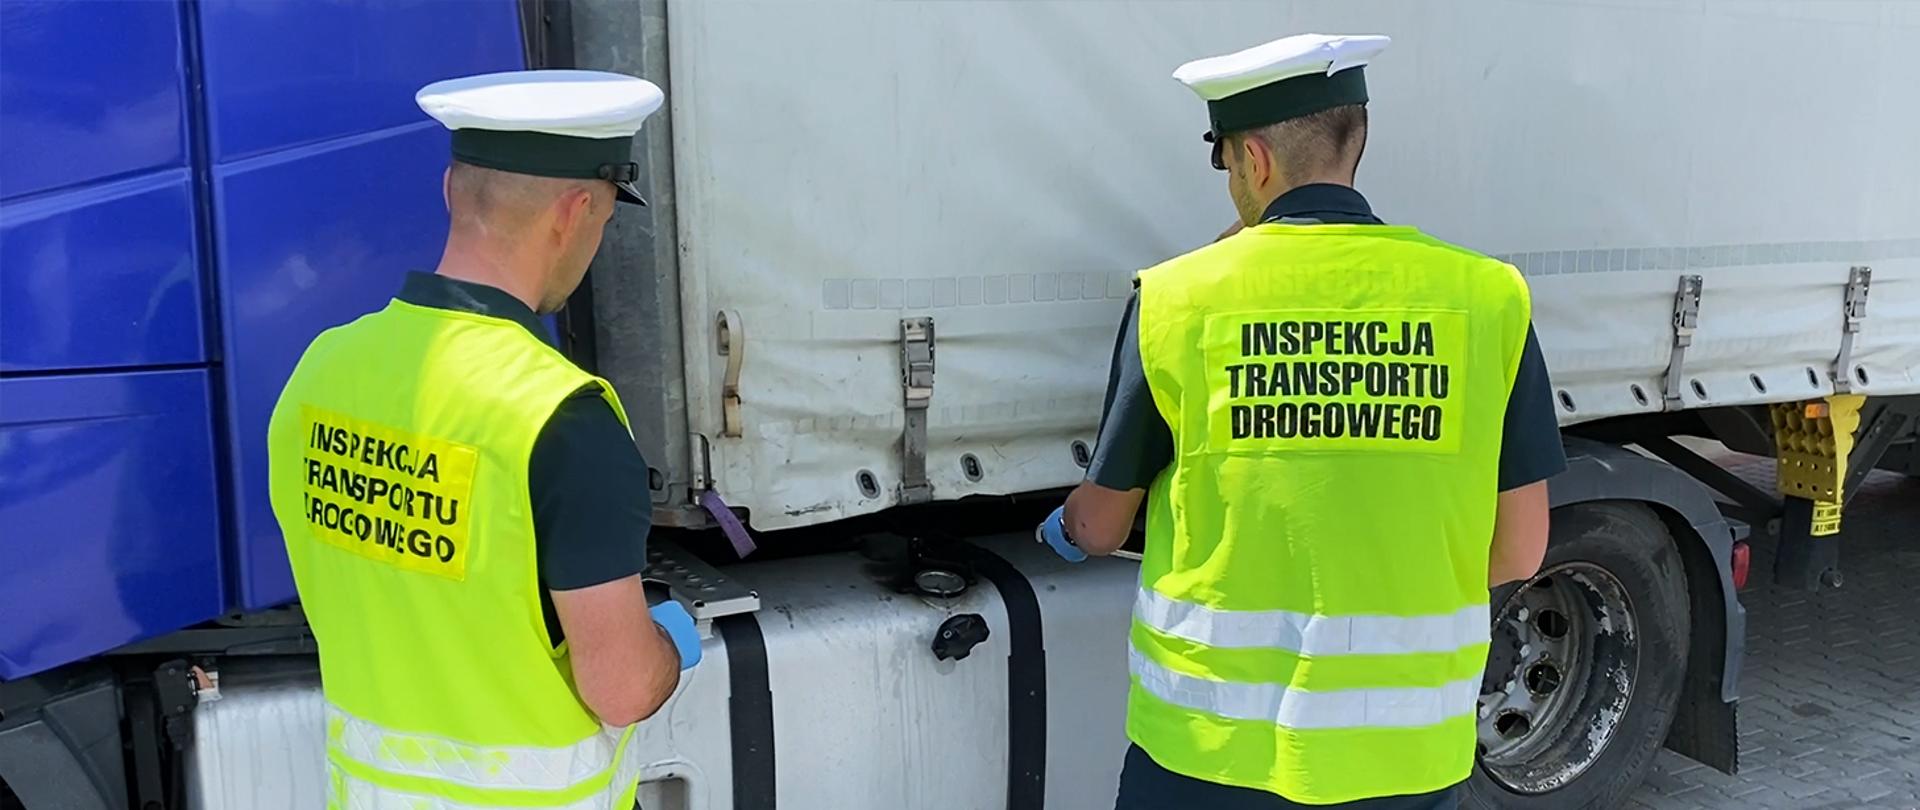 Insepktorzy w odblaskowych kamizelkach z napisem Inspekcja Transportu Drogowego stoją przy ciężarówce, bak od paliwa jest odkręcony, jeden z dwóch inspektorów trzyma w ręku wężyk, którym będzie pobierane paliwo do próbki
